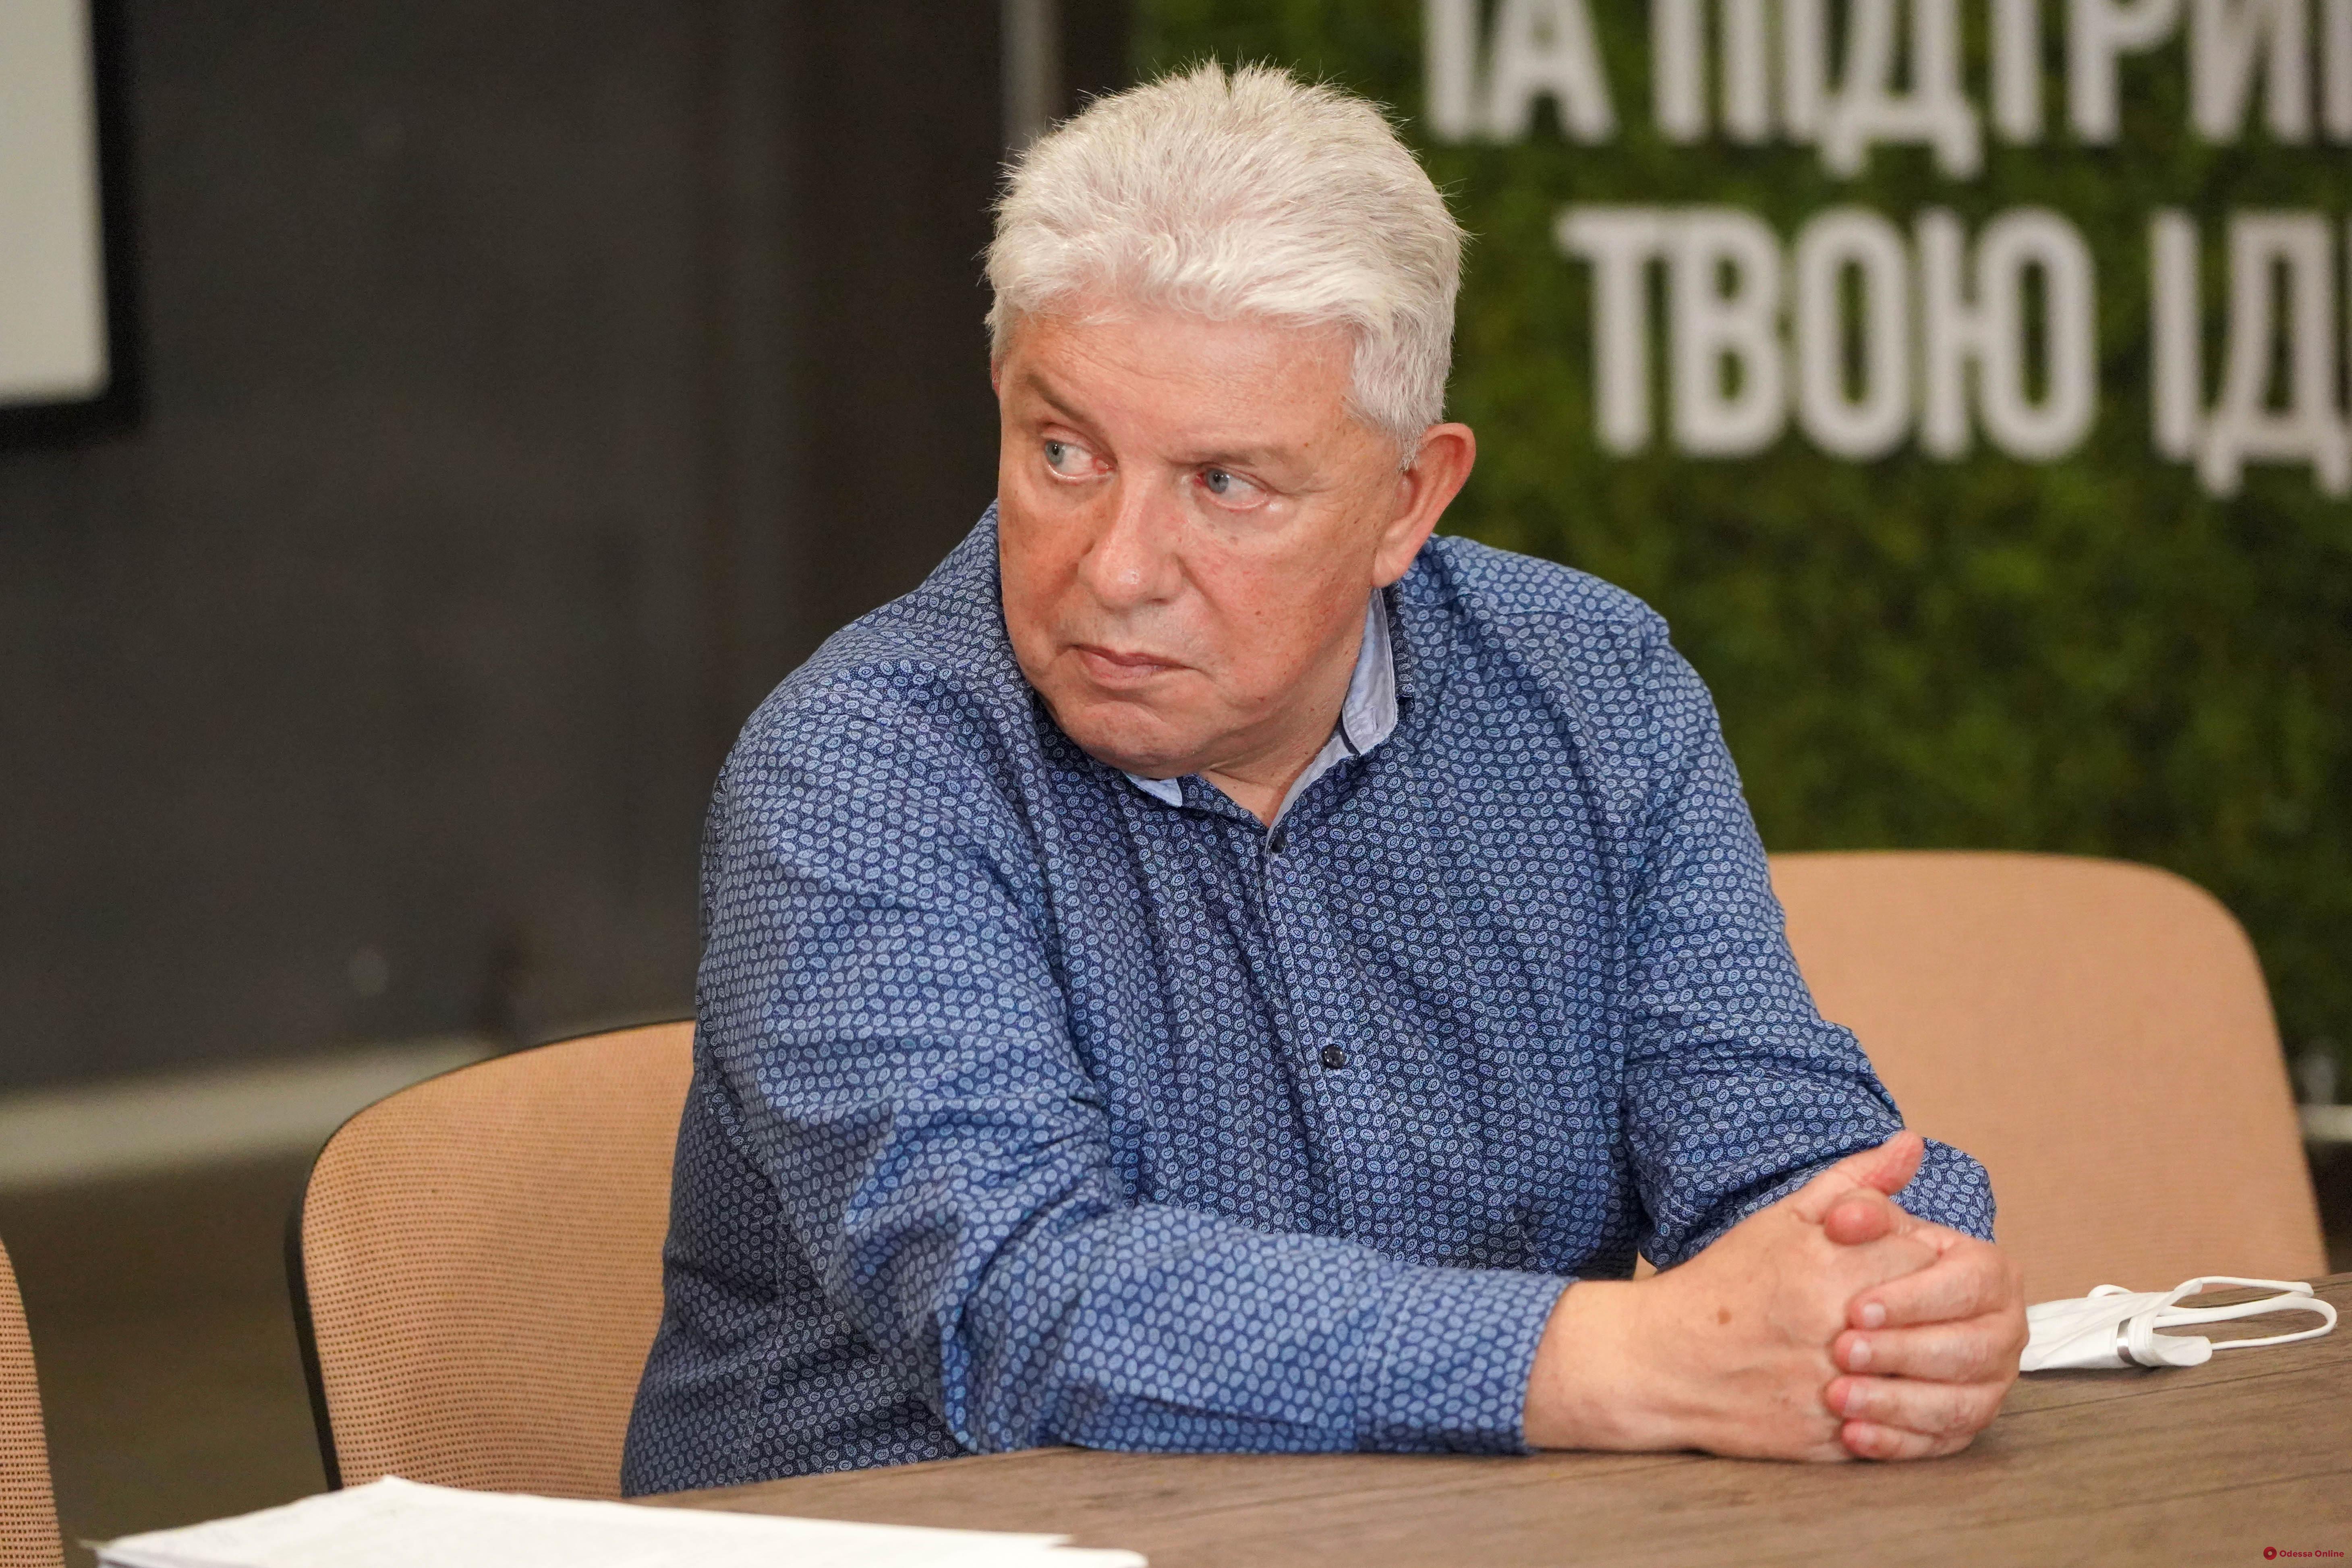 Кандидат в мэры Одессы Олег Филимонов рассказал, как будет создавать прозрачную мэрию